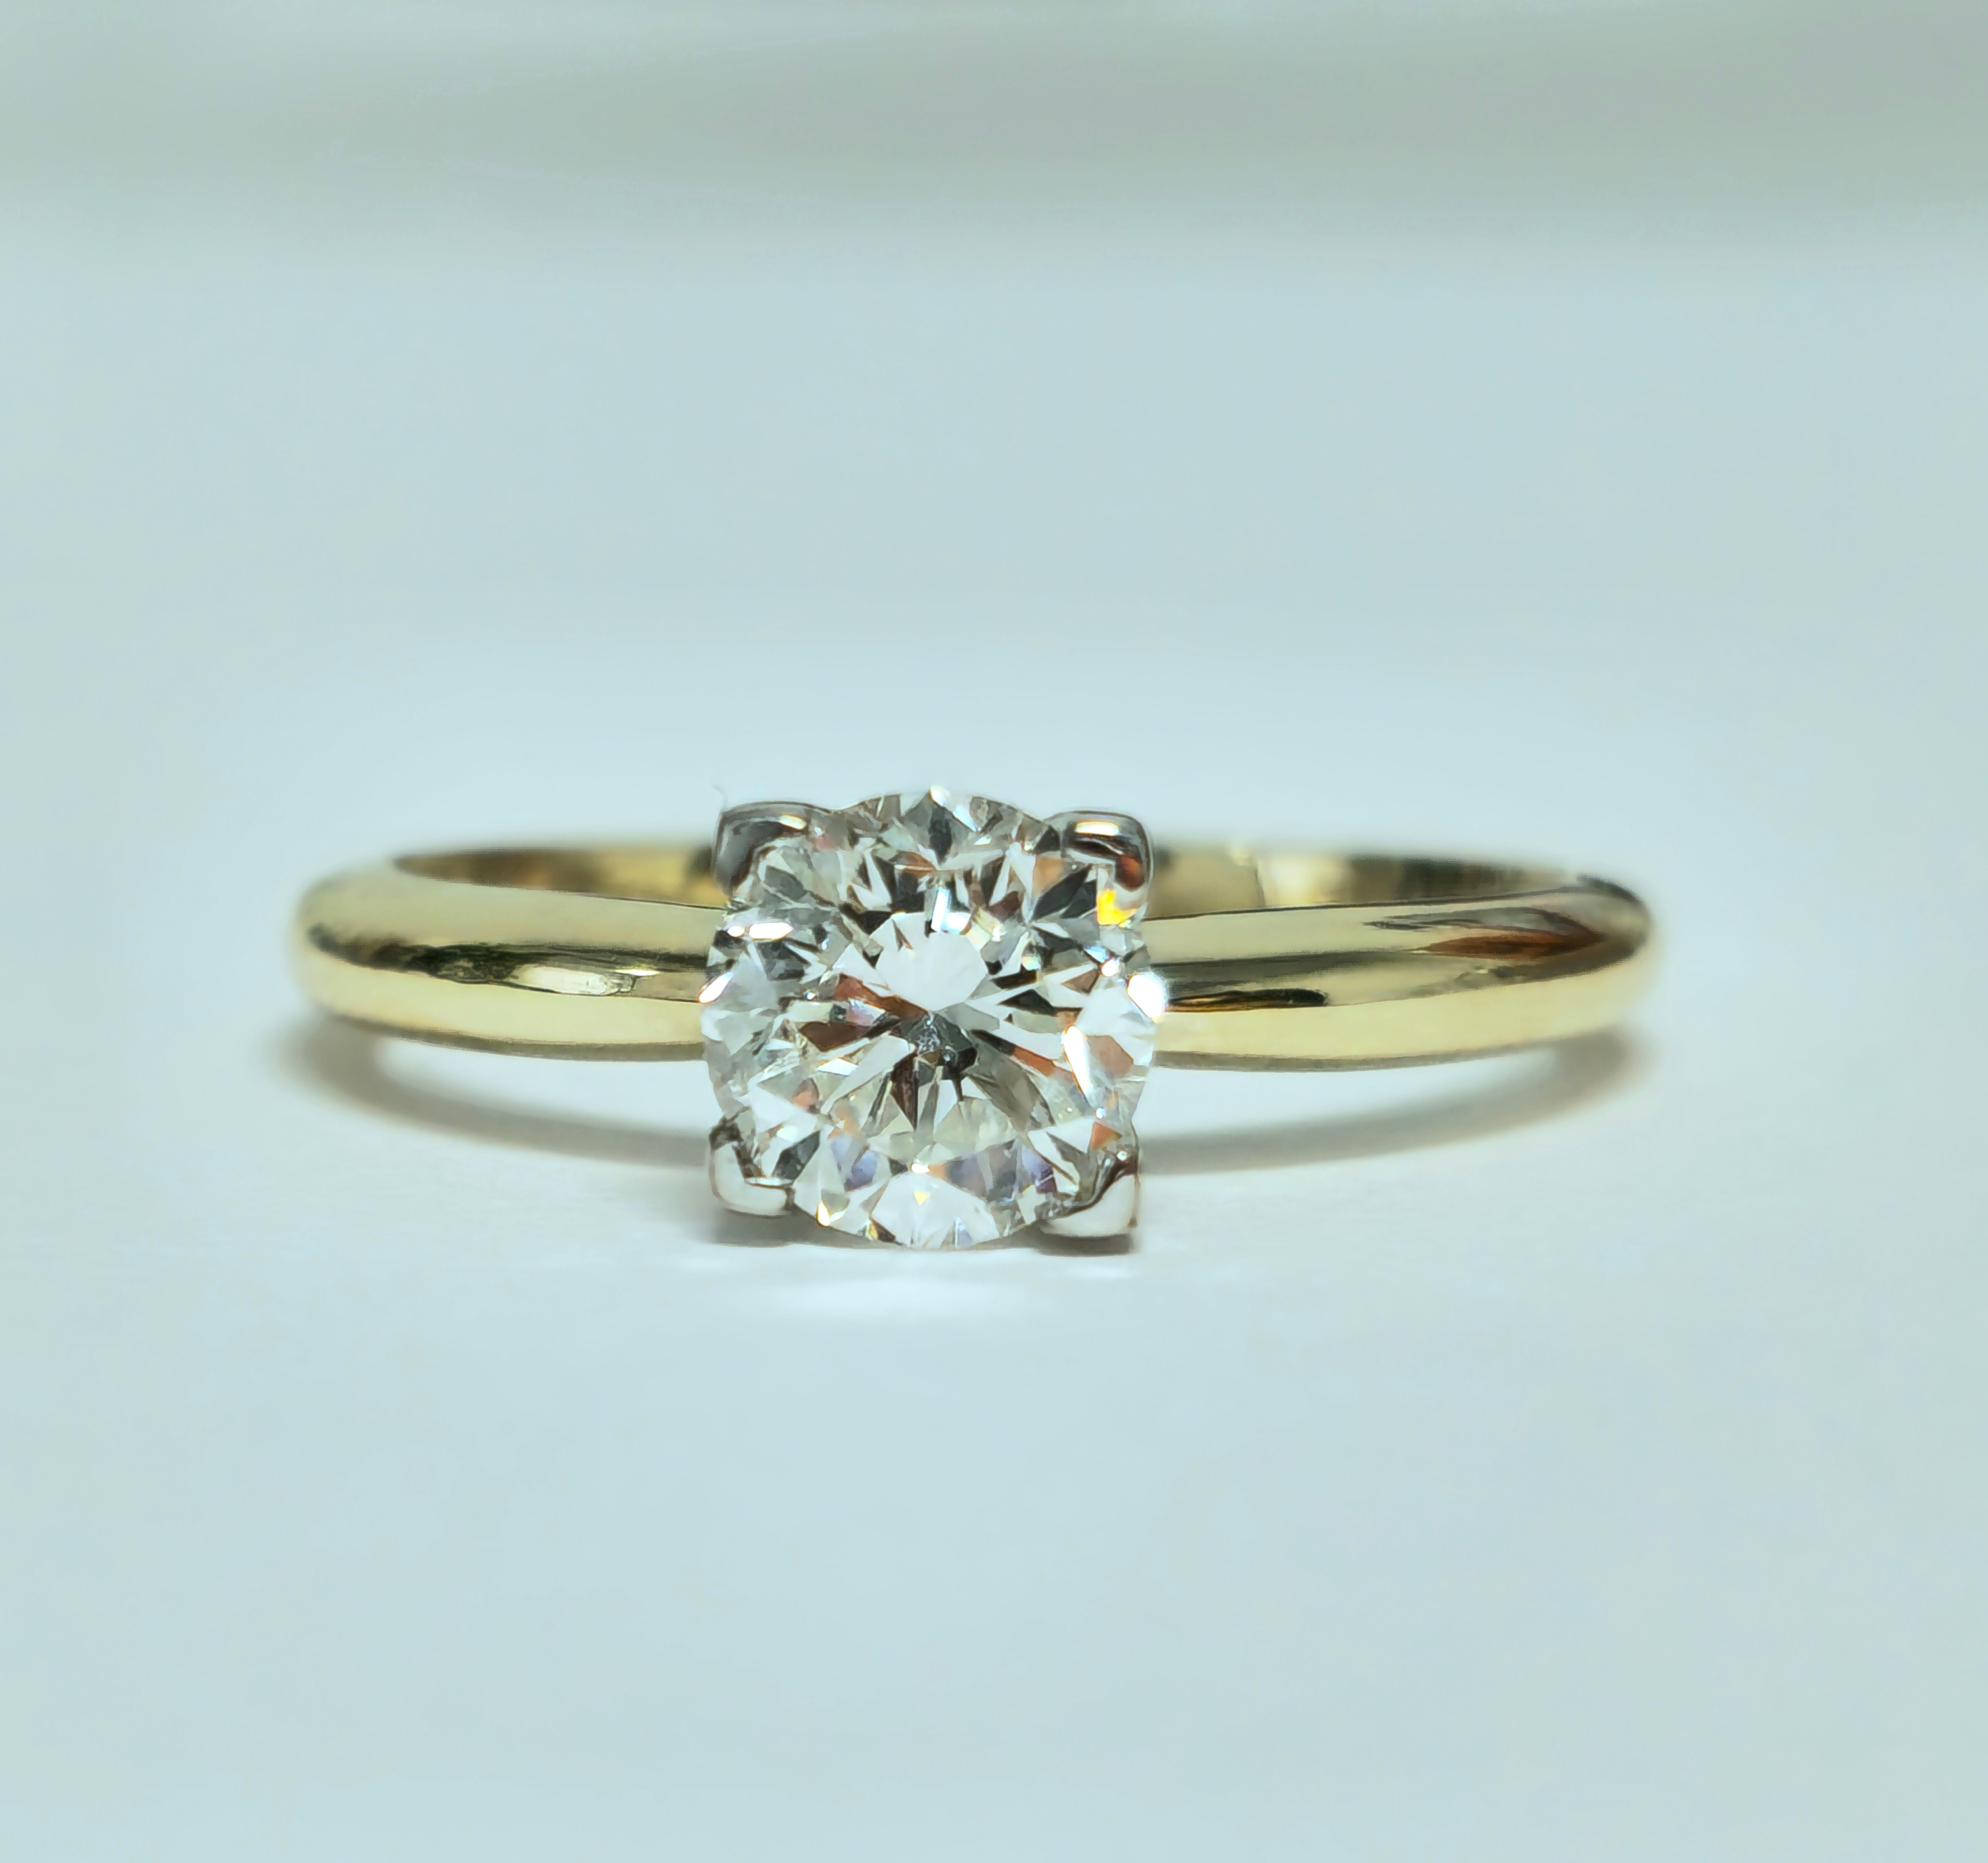 Fabriquée en or jaune 14k, cette magnifique bague de fiançailles est ornée d'un brillant diamant de taille ronde de 1,07 carat, d'une pureté VS1 et d'une couleur G. Extrait de la terre, ce diamant brille magnifiquement sur le bracelet en or. Avec